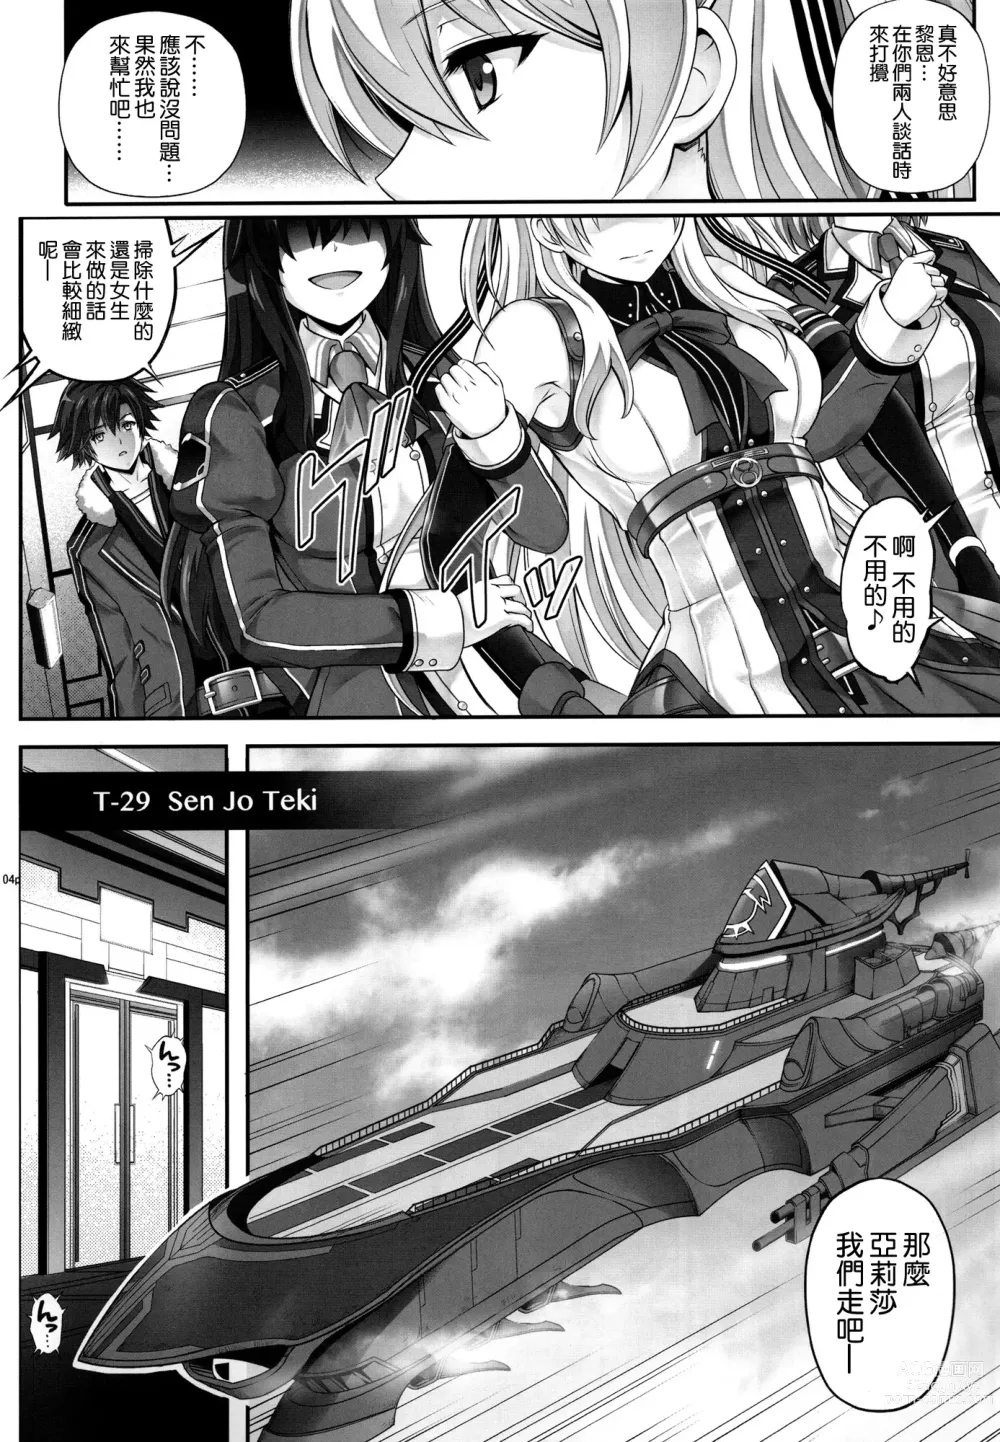 Page 4 of doujinshi T-29 SenJoTeki